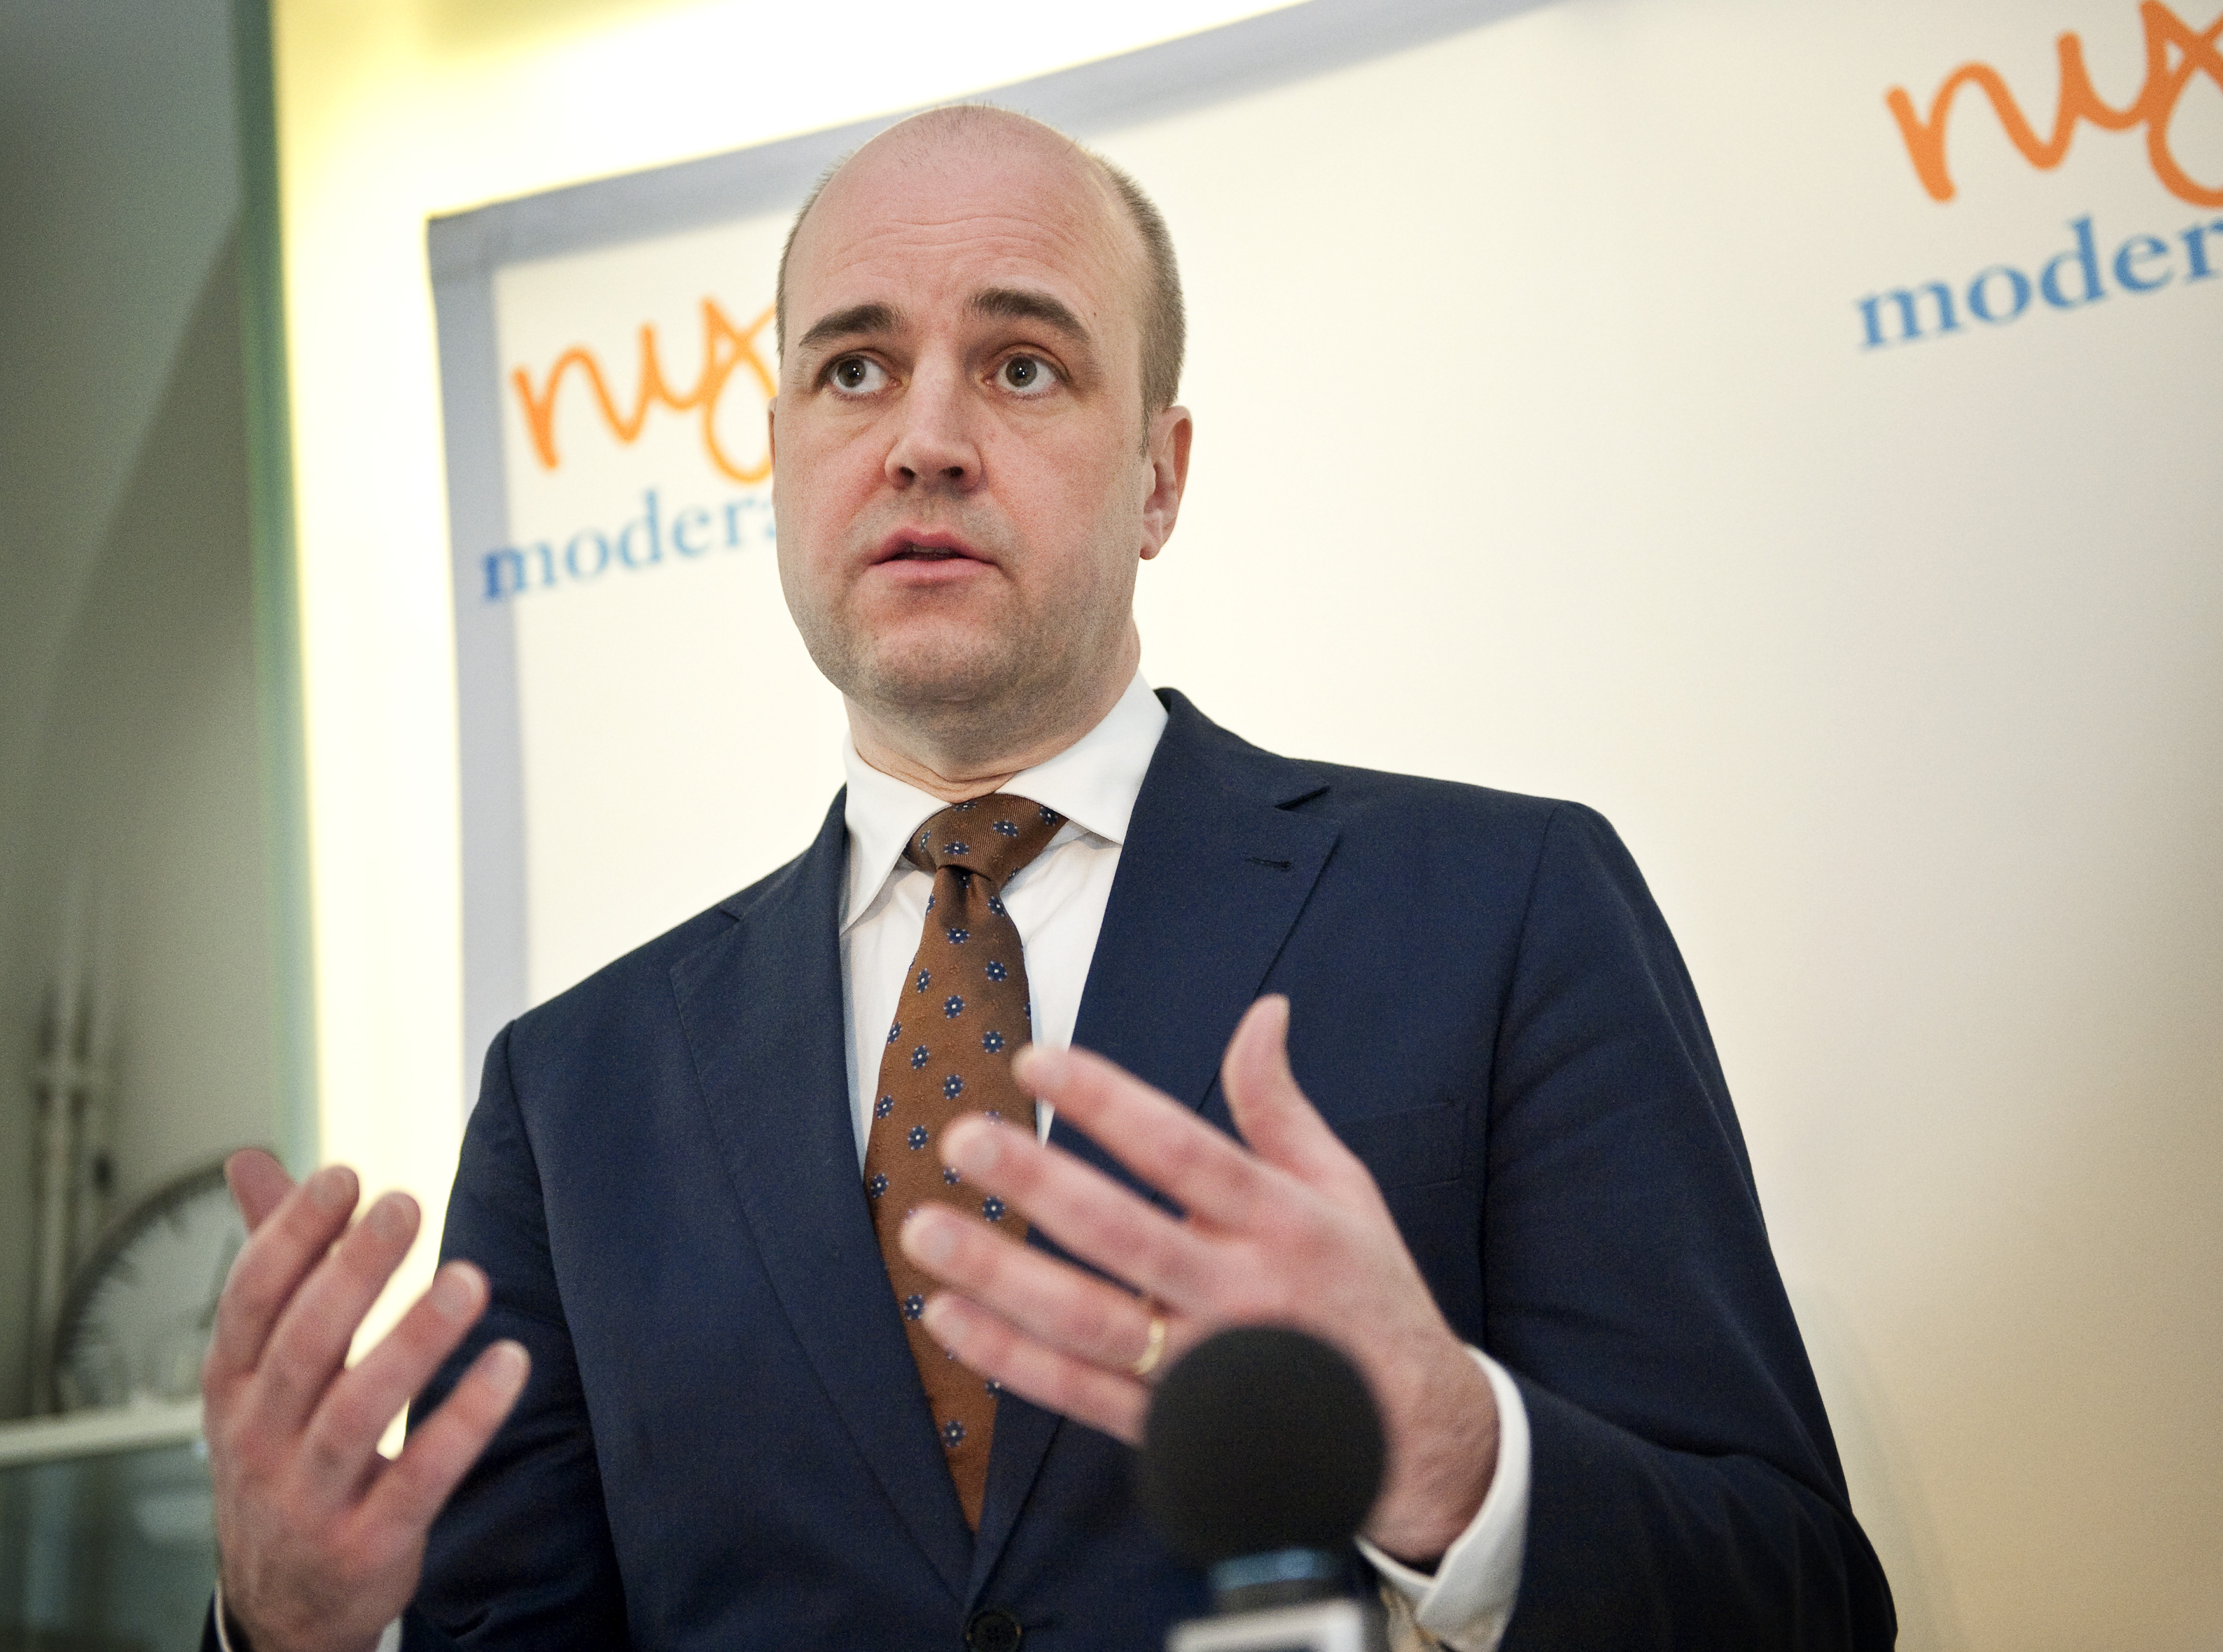 Kvotering, Riksdagsvalet 2010, Fredrik Reinfeldt, Jämställdhet, Pappaledighet, Föräldraförsäkringen